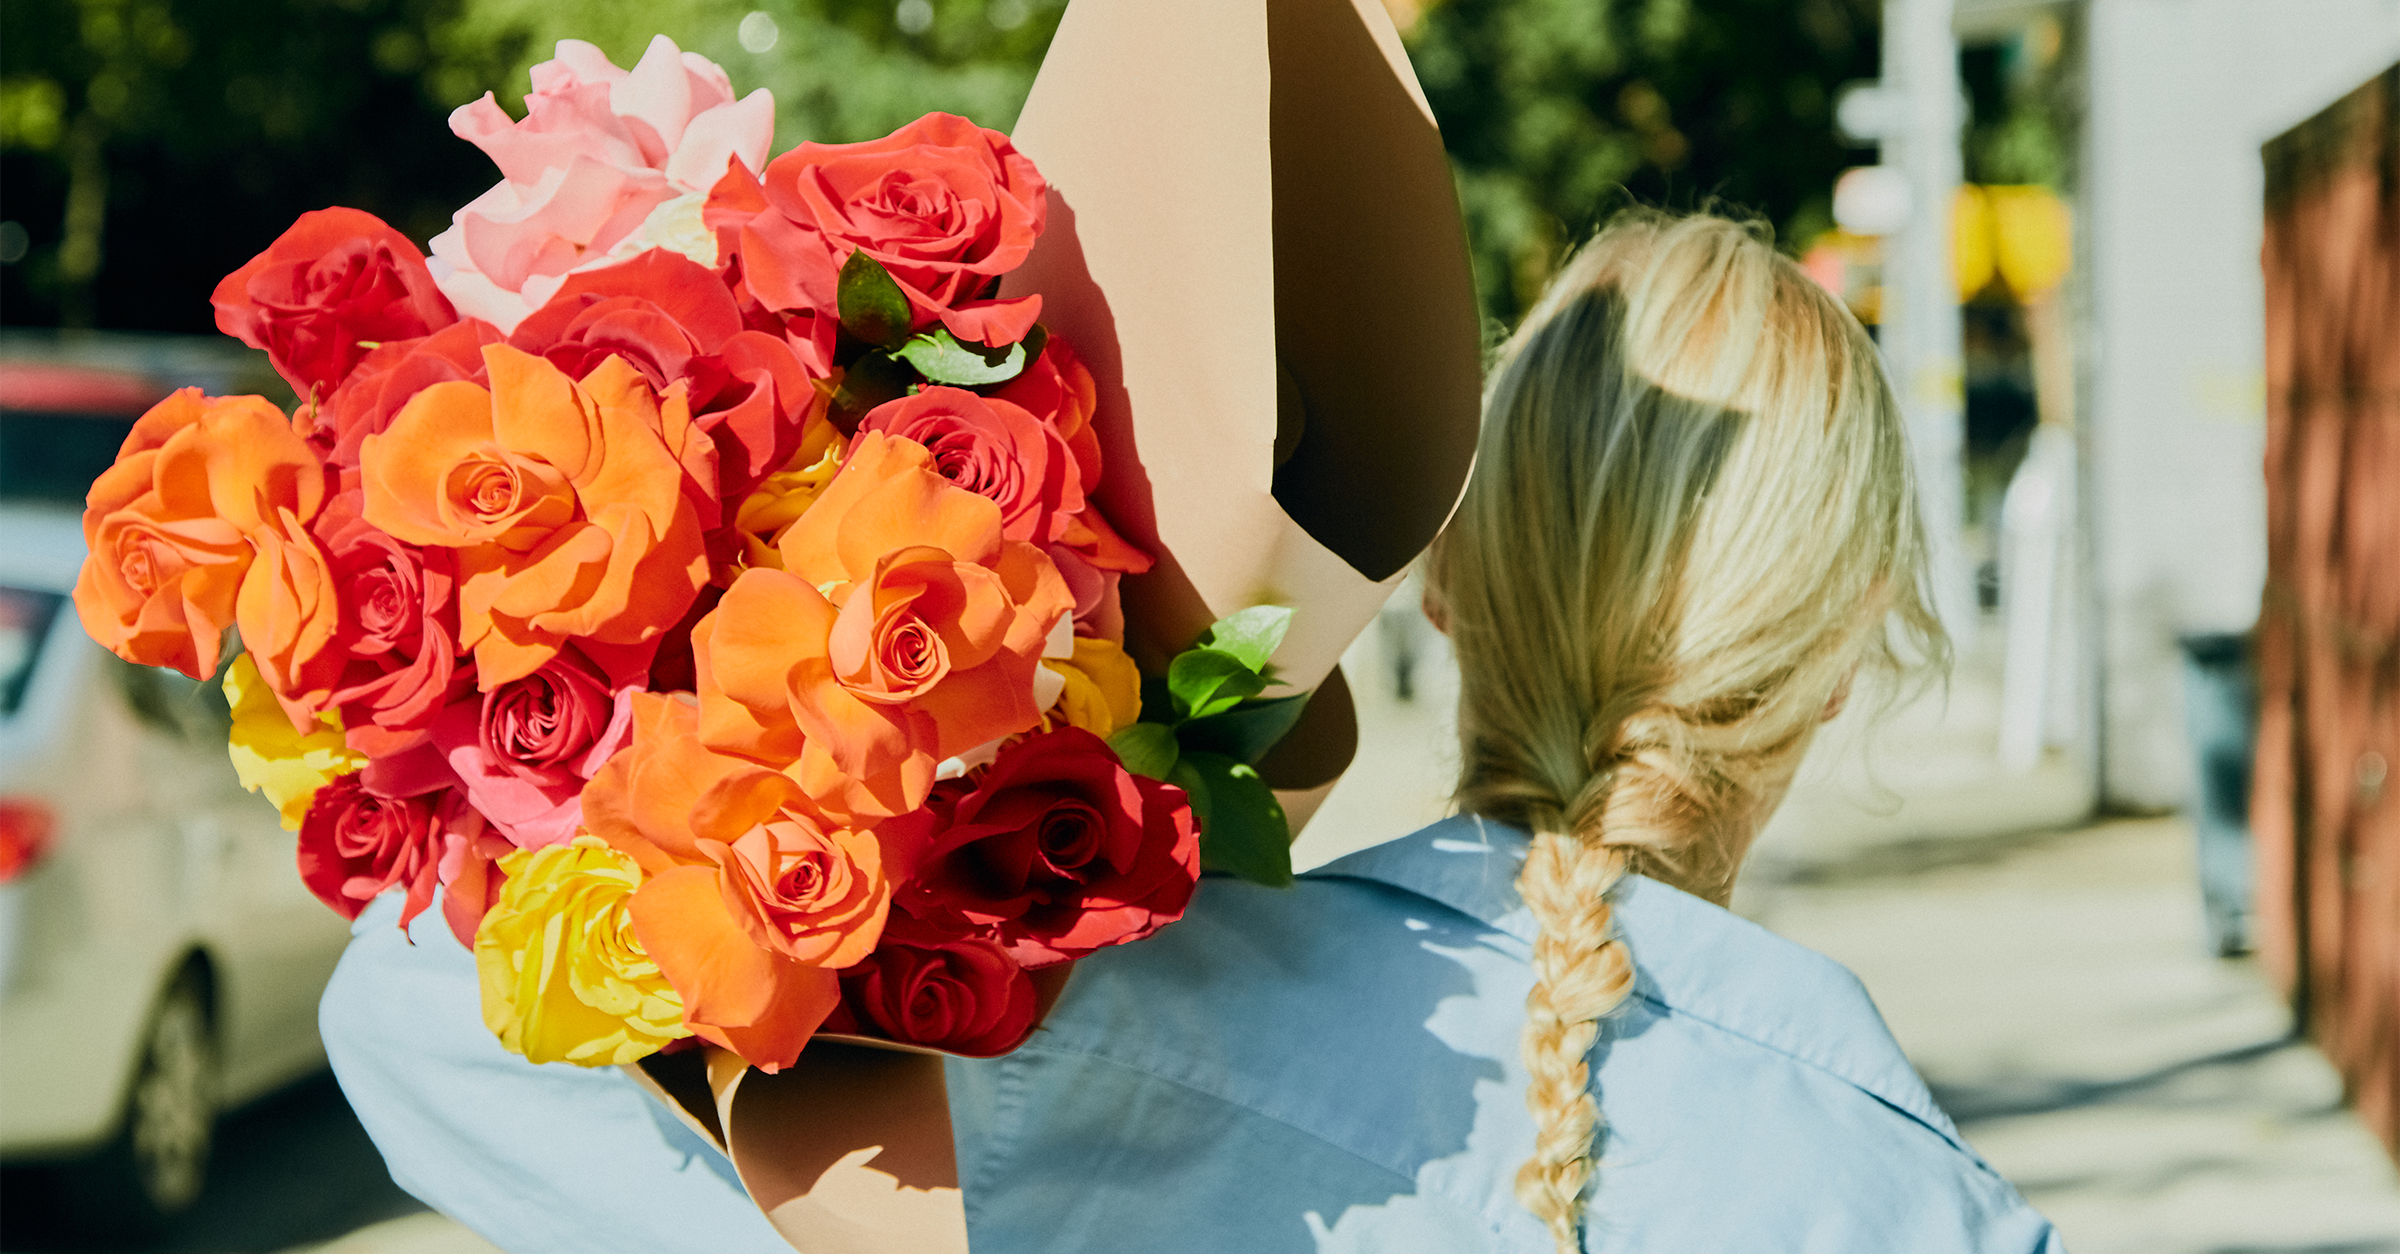 Doručení růží: Pošlete kytice růží | Proflowers